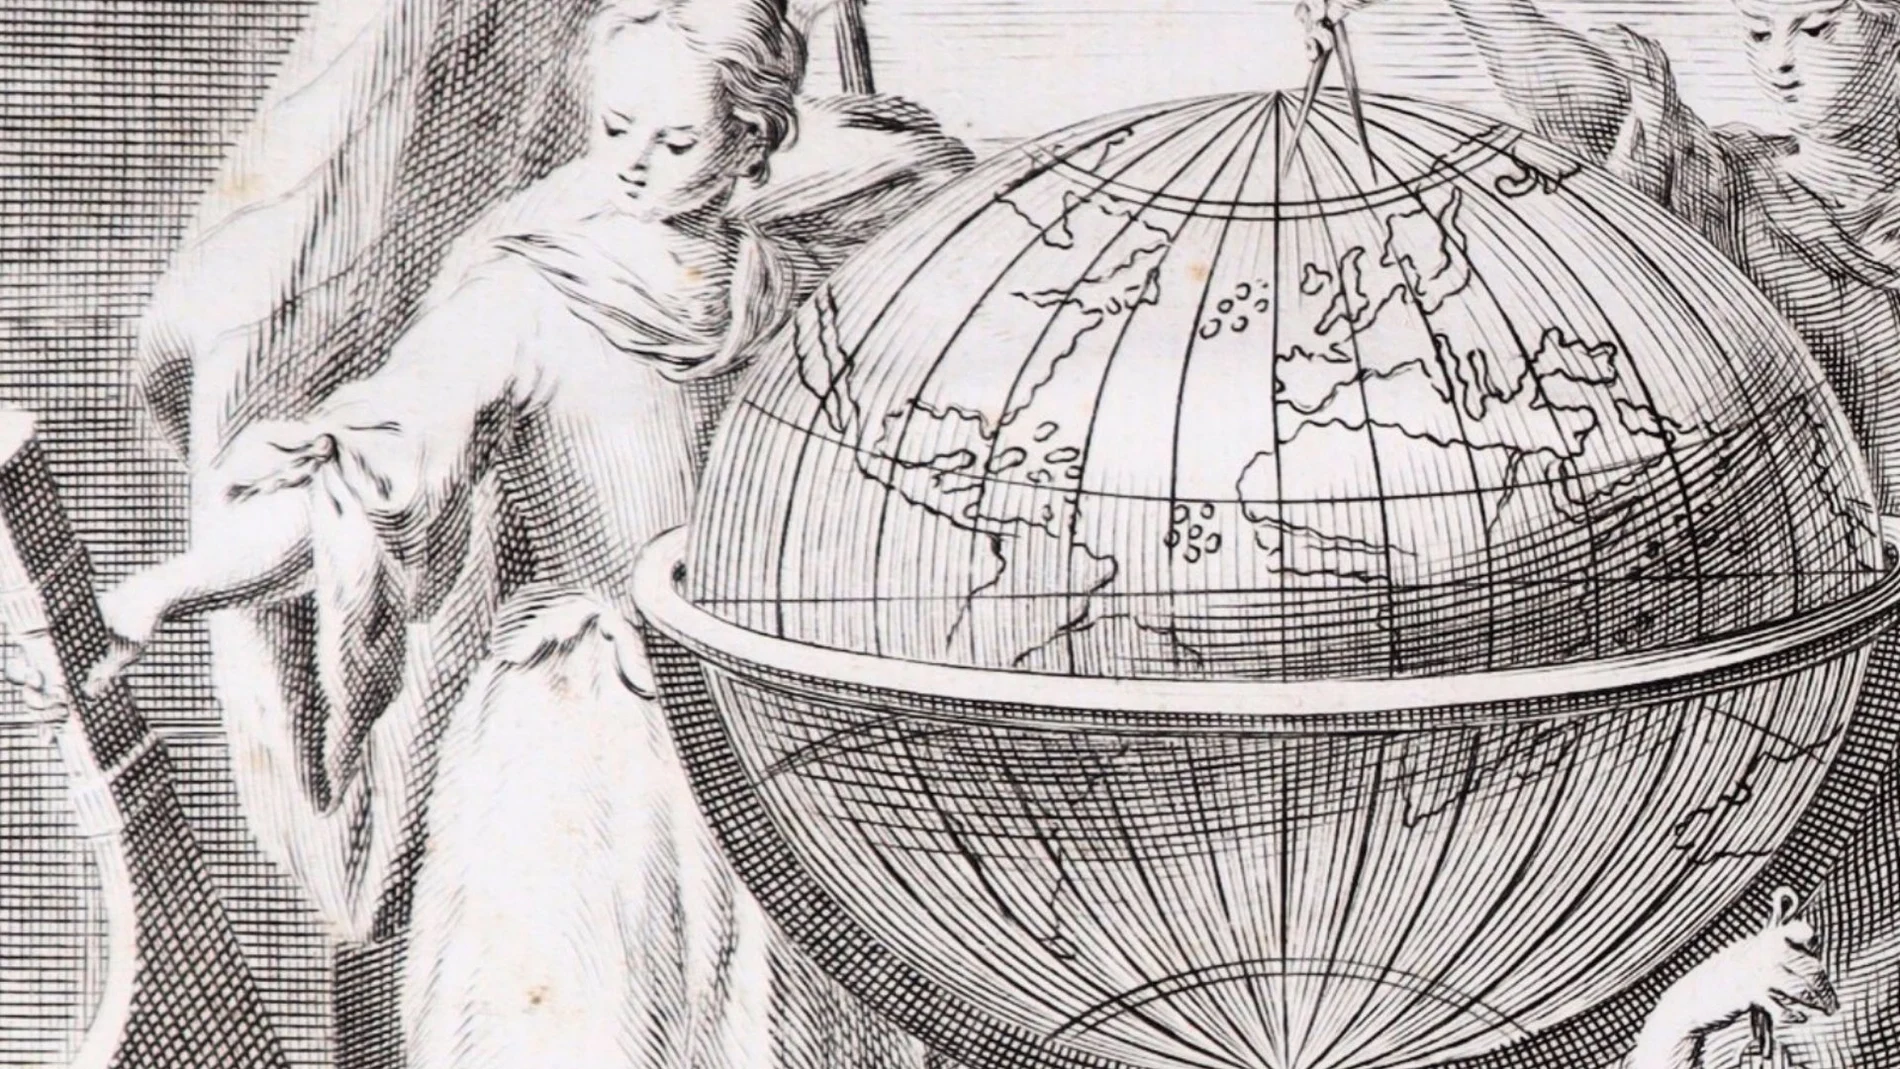 MURCIA.-El ARQVA exhibirá una de las publicaciones de la misión dirigida a estudiar la forma de la Tierra el siglo XVIII